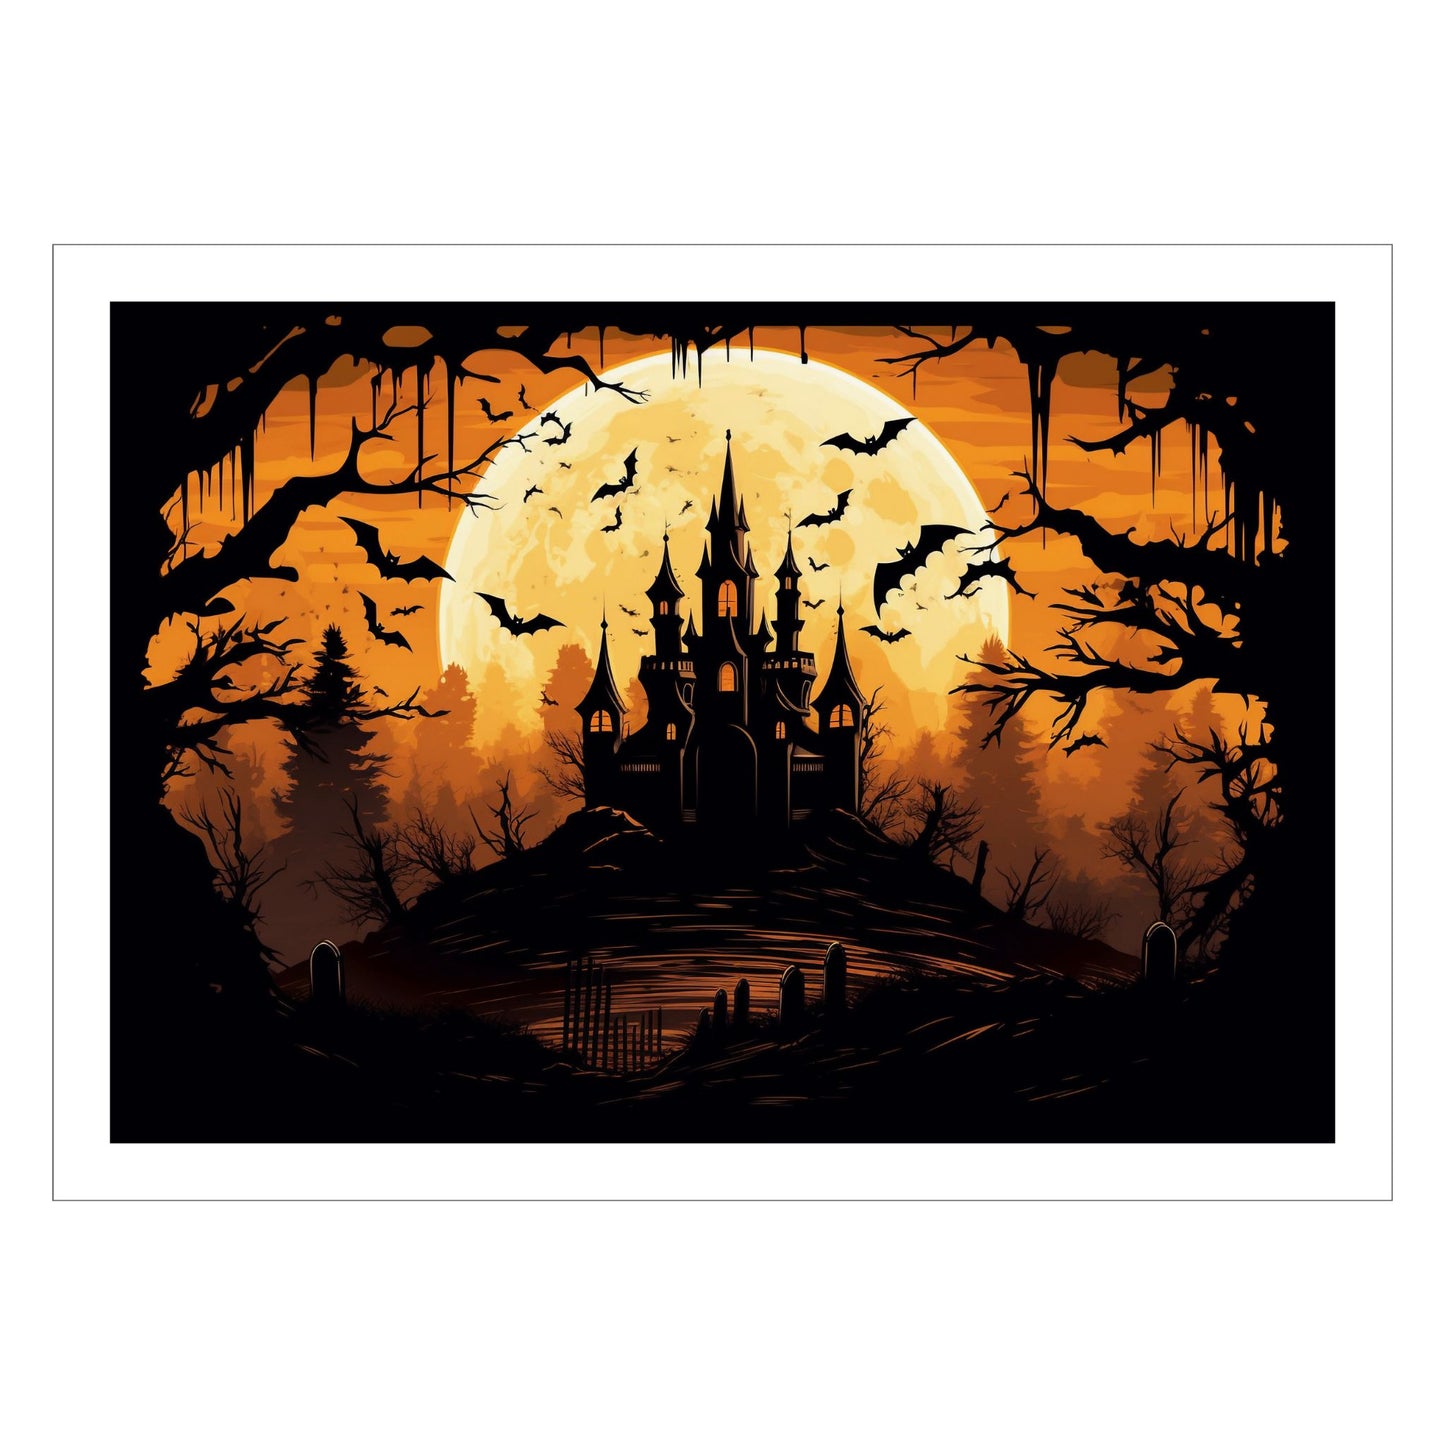 Creepy plakat med motiv av Halloween slott ved fullmåne. Motivet viser nattmørke med flaggermus og lys i vinduene.